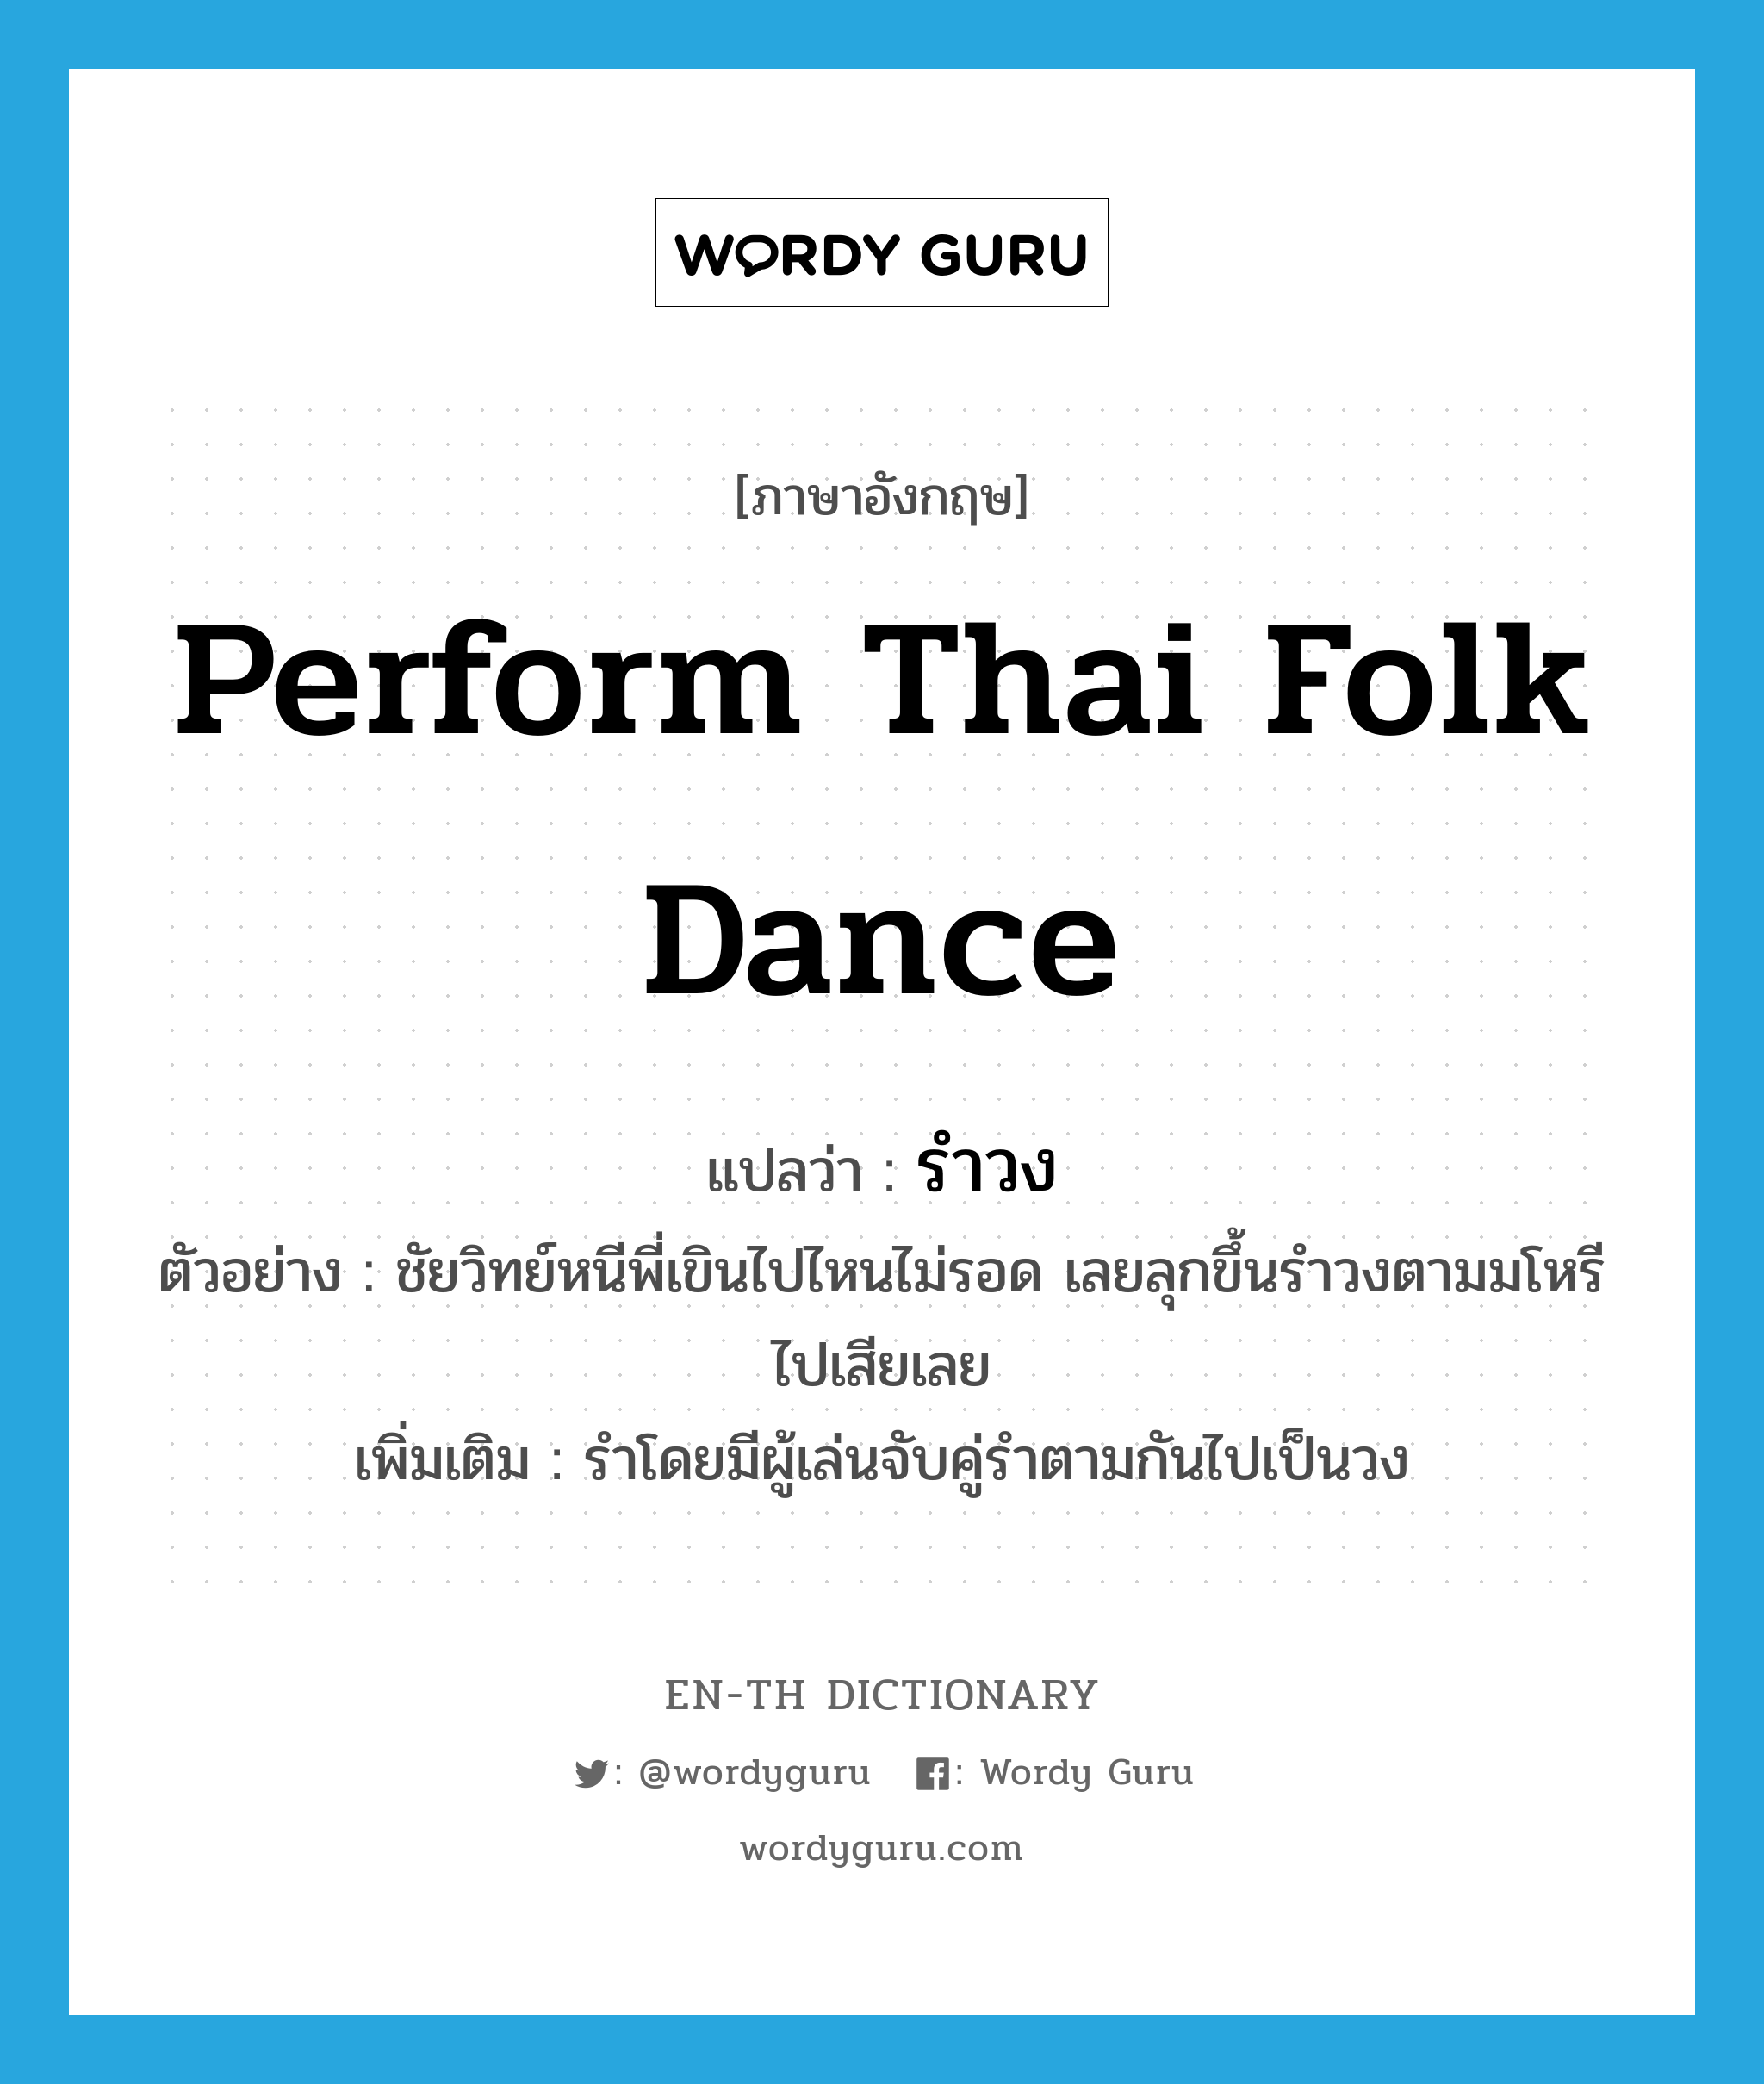 perform Thai folk dance แปลว่า?, คำศัพท์ภาษาอังกฤษ perform Thai folk dance แปลว่า รำวง ประเภท V ตัวอย่าง ชัยวิทย์หนีพี่เขินไปไหนไม่รอด เลยลุกขึ้นรำวงตามมโหรีไปเสียเลย เพิ่มเติม รำโดยมีผู้เล่นจับคู่รำตามกันไปเป็นวง หมวด V